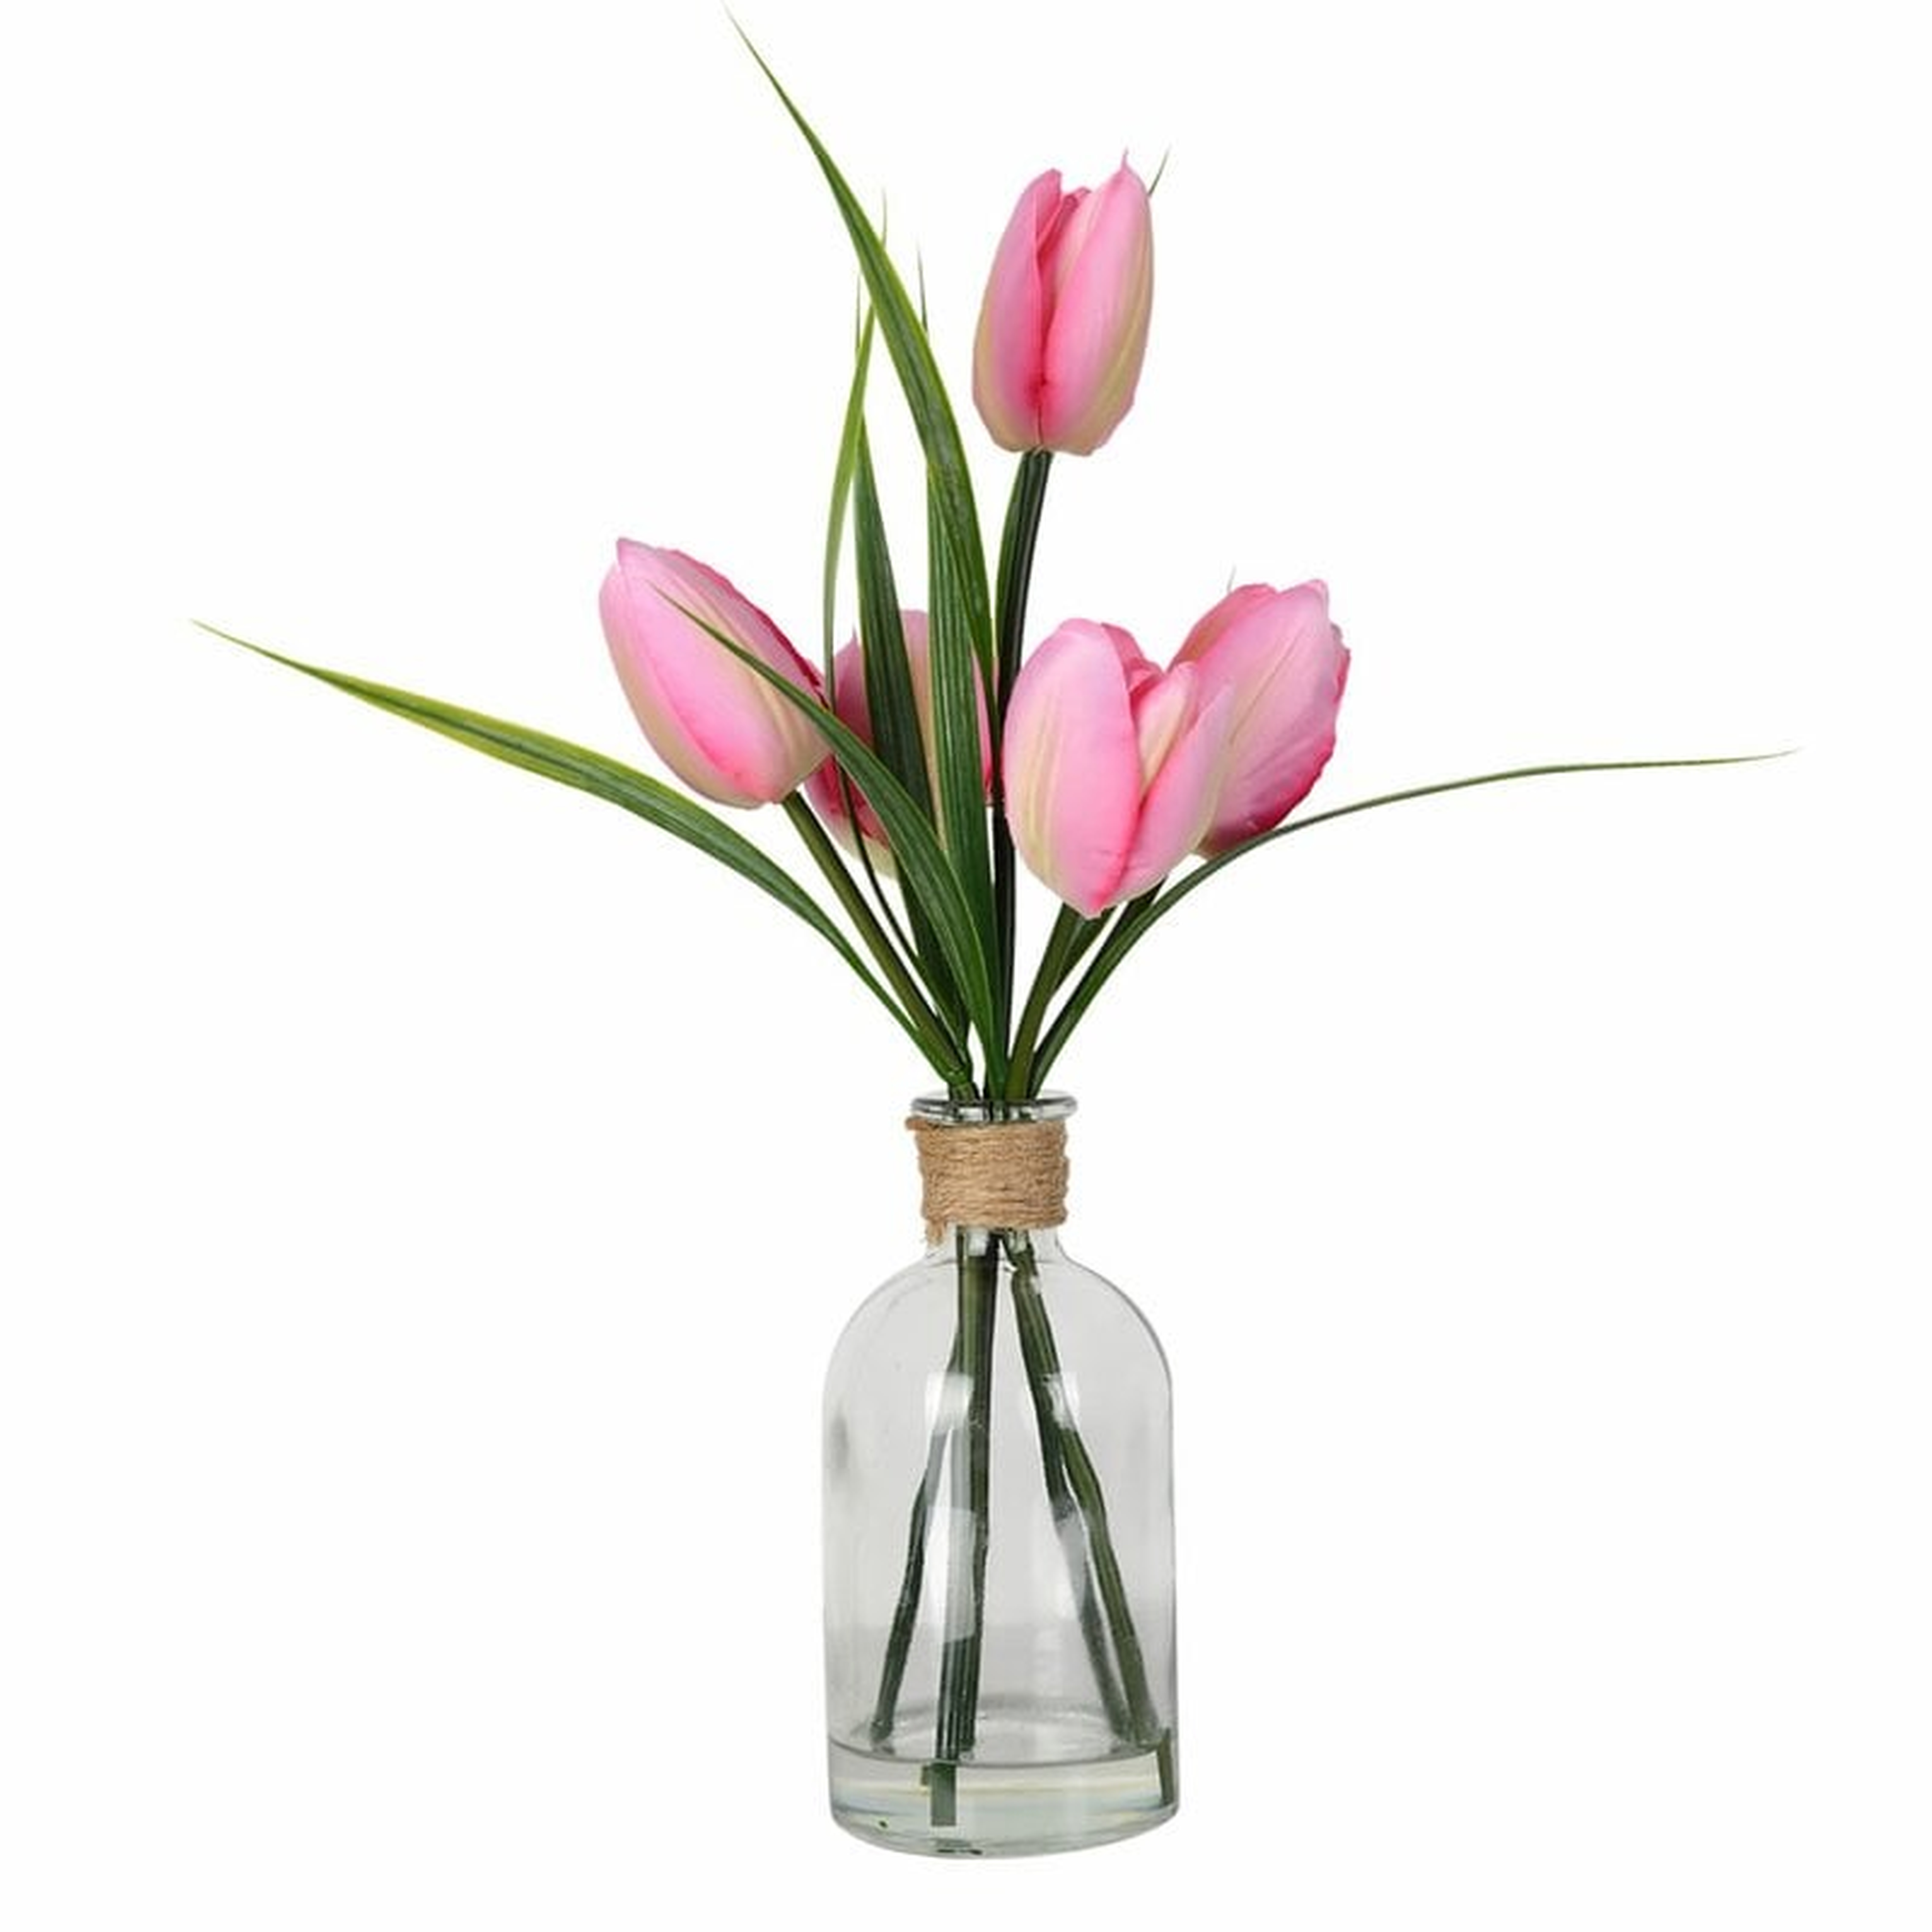 Tulip Floral Arrangement in Vase - Wayfair